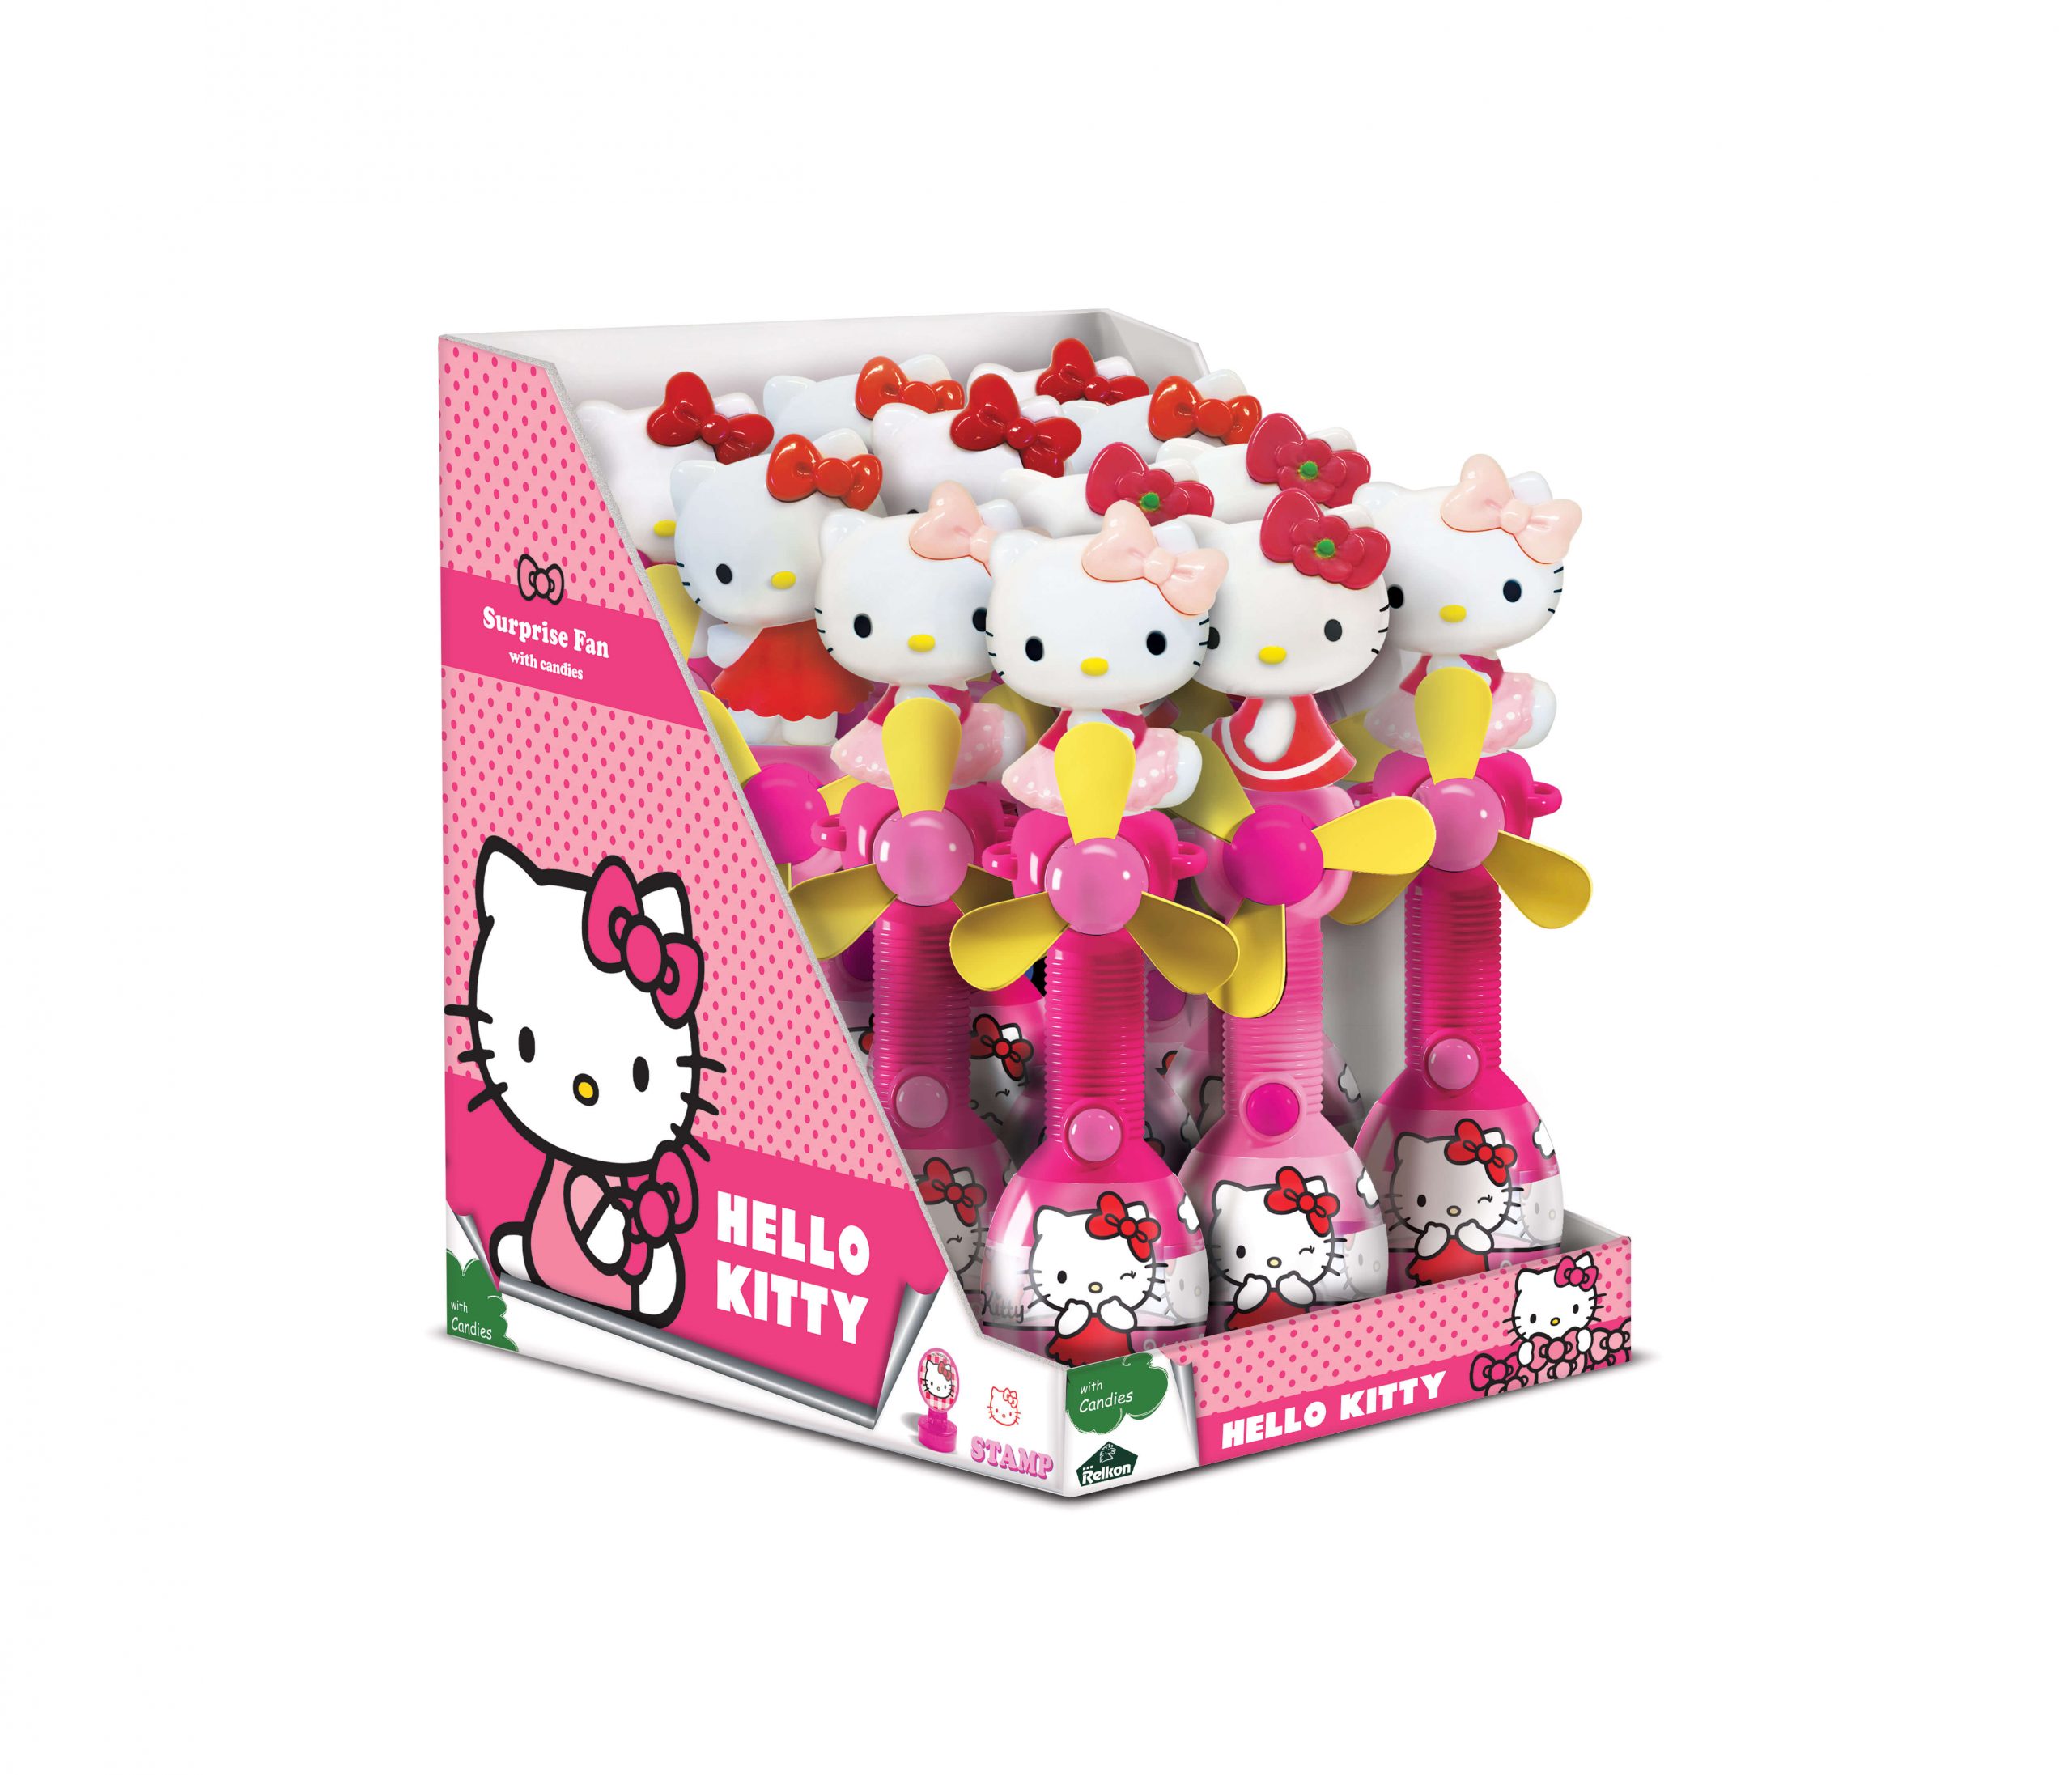 Hello Kitty surprise fan